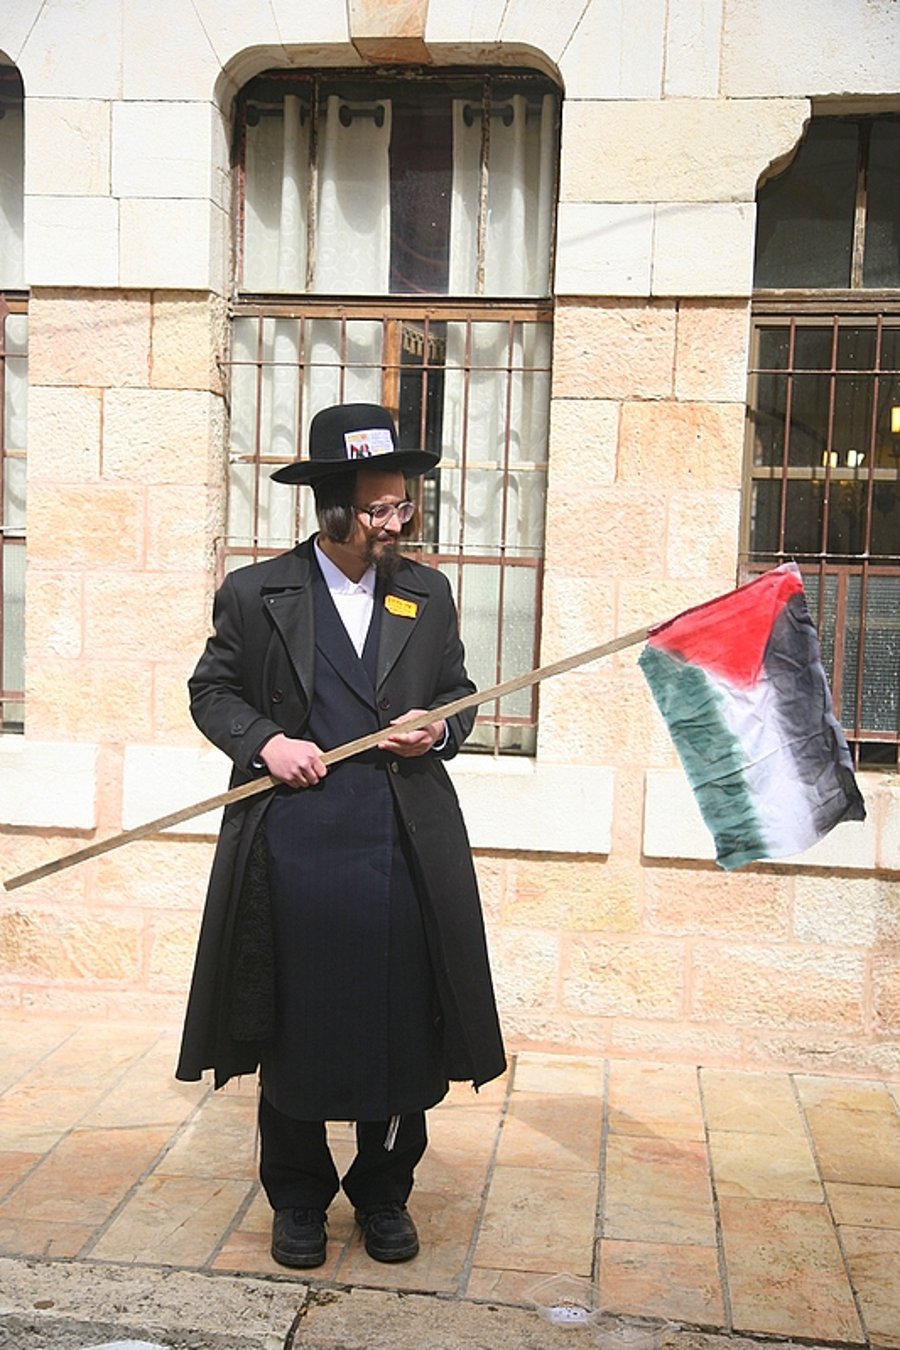 כך חוגגים קנאי ירושלים את פורים: שורפים דגלי ישראל